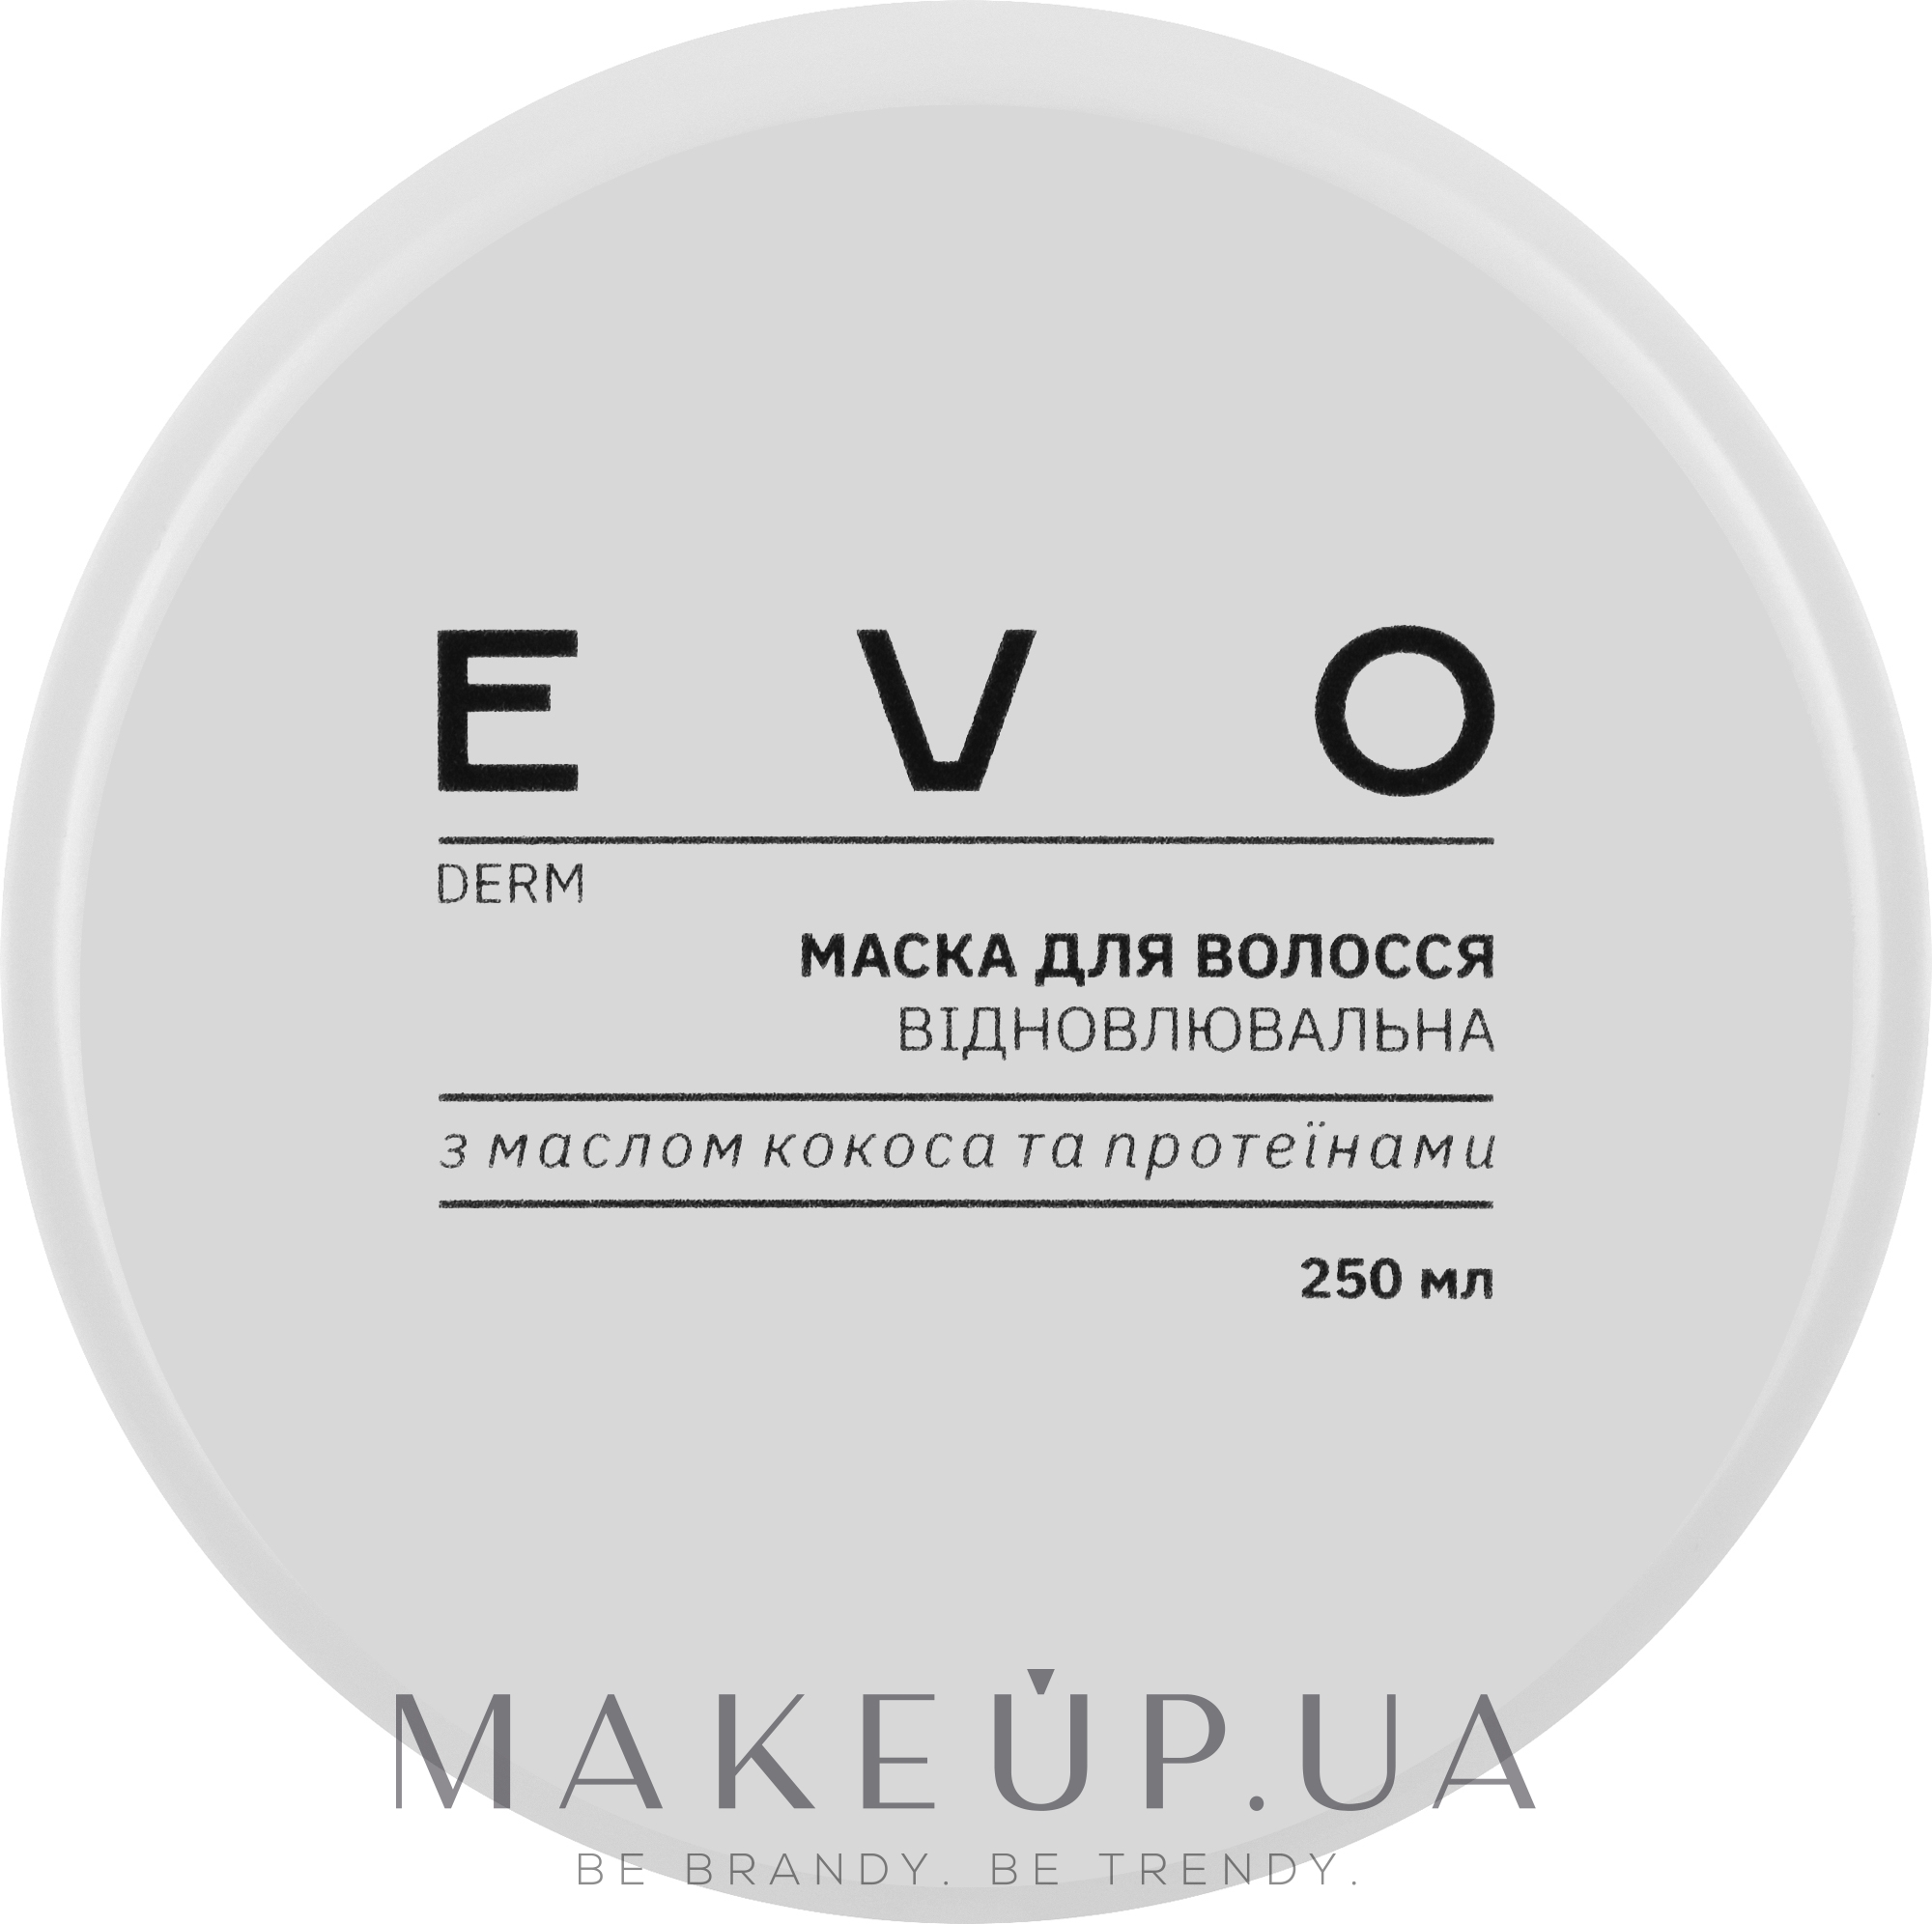 Відновлювальна маска для волосся з маслом кокоса й протеїнами - EVO derm — фото 250ml